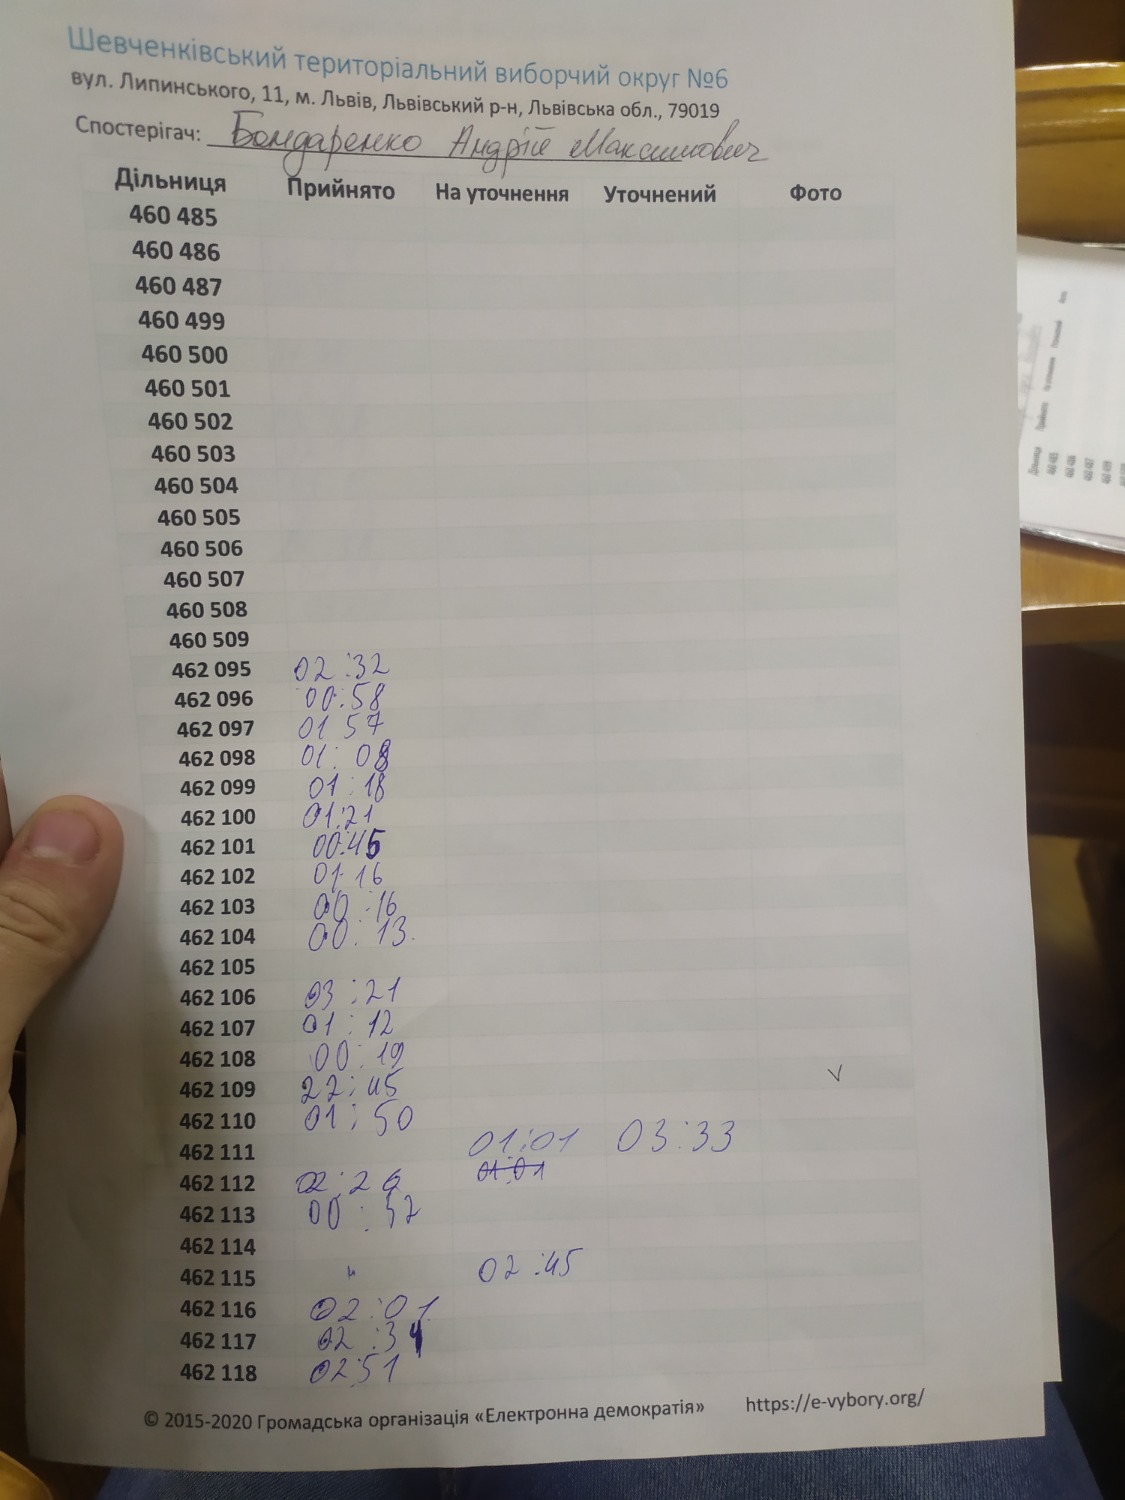 Протокол результатів голосування на виборчій дільниці № 462111